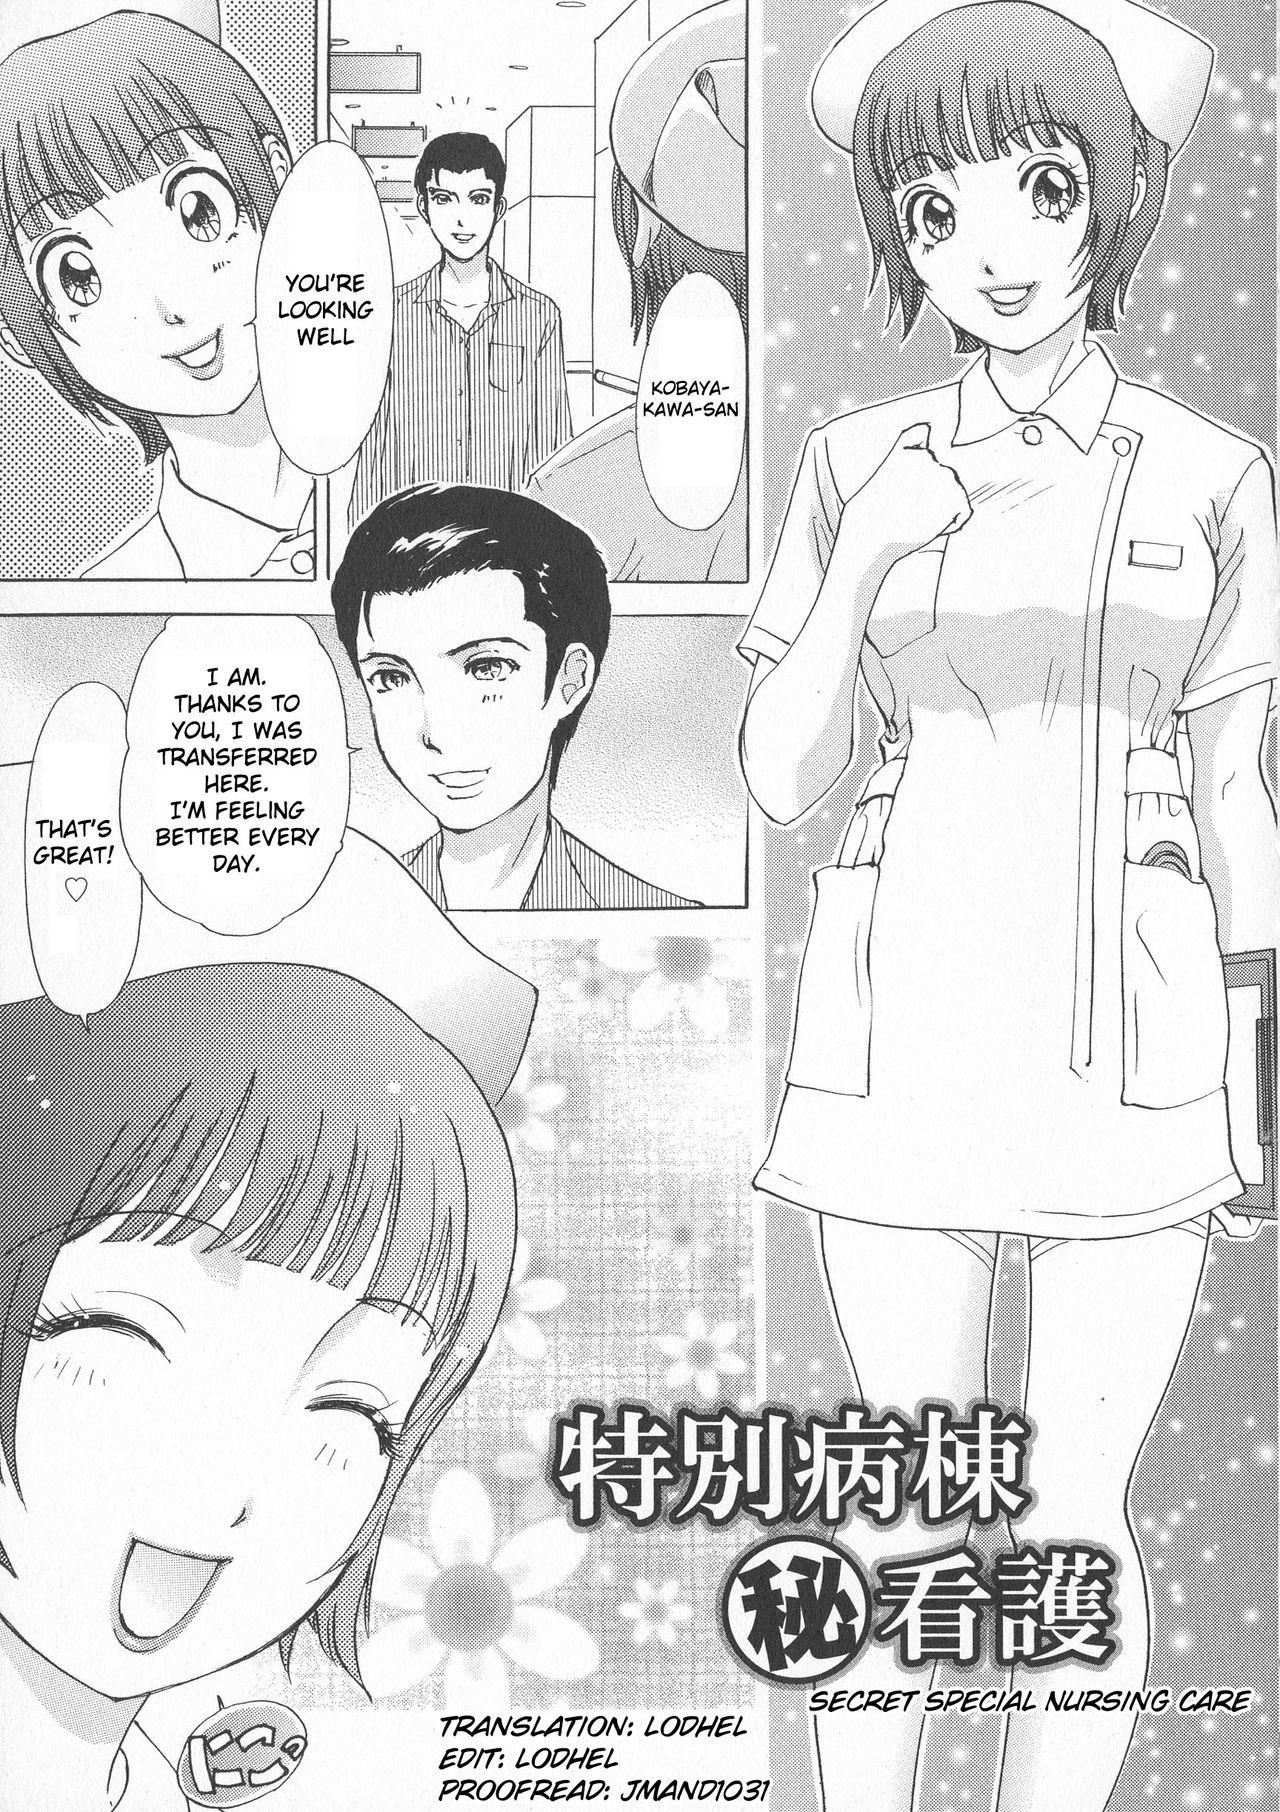 Hot Naked Girl Tokubetsu byoutou hi kango | Secret Special Nursing Care Concha - Page 1